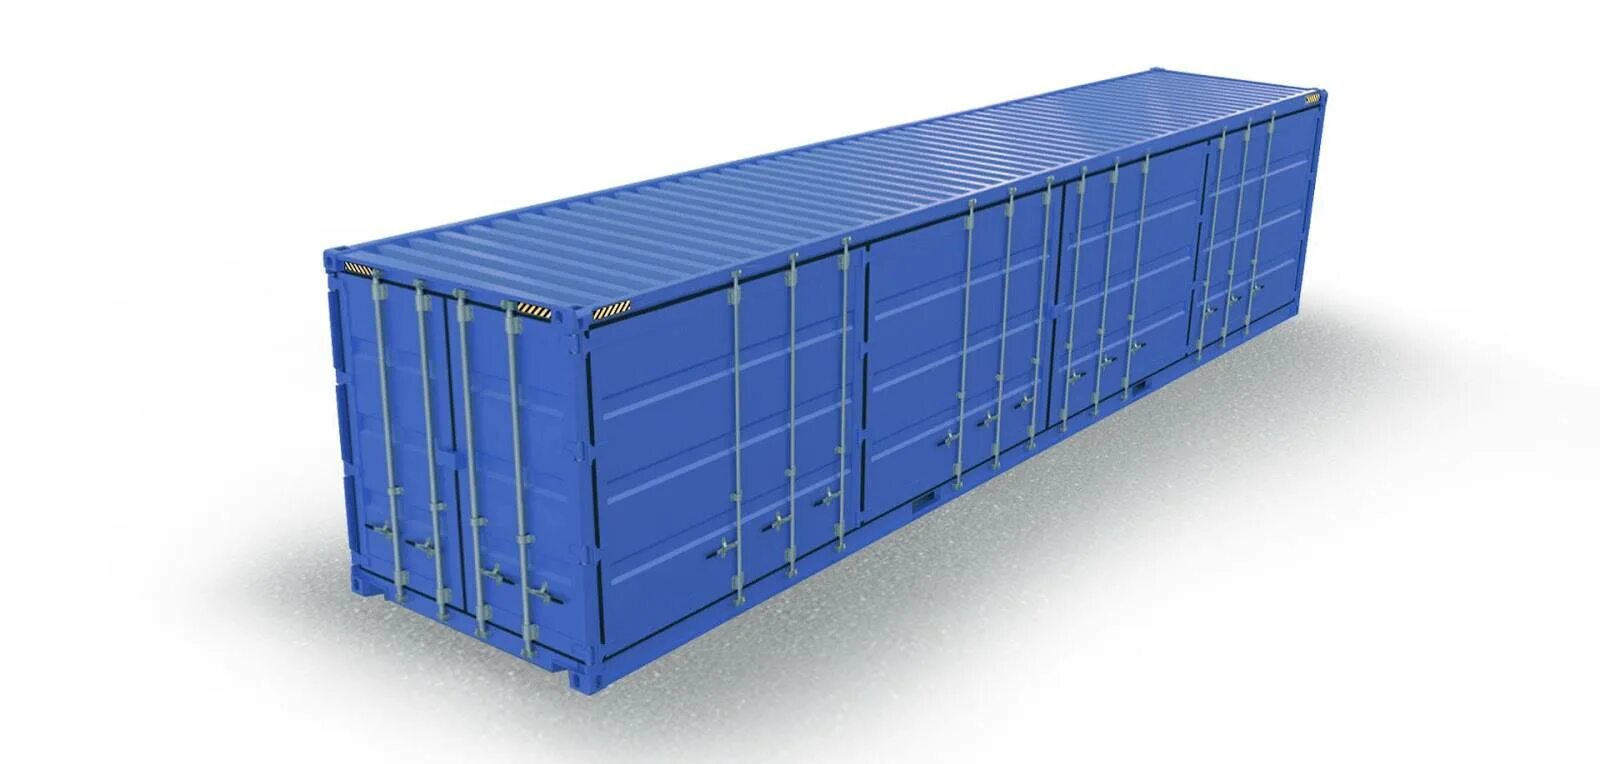 45 ФТ контейнер. 45 Футовый прицеп грузовой. 20-Футовый стандартный (Dry Cube) контейнер. DFDS контейнер 45 футов. Морской контейнер 45 футов